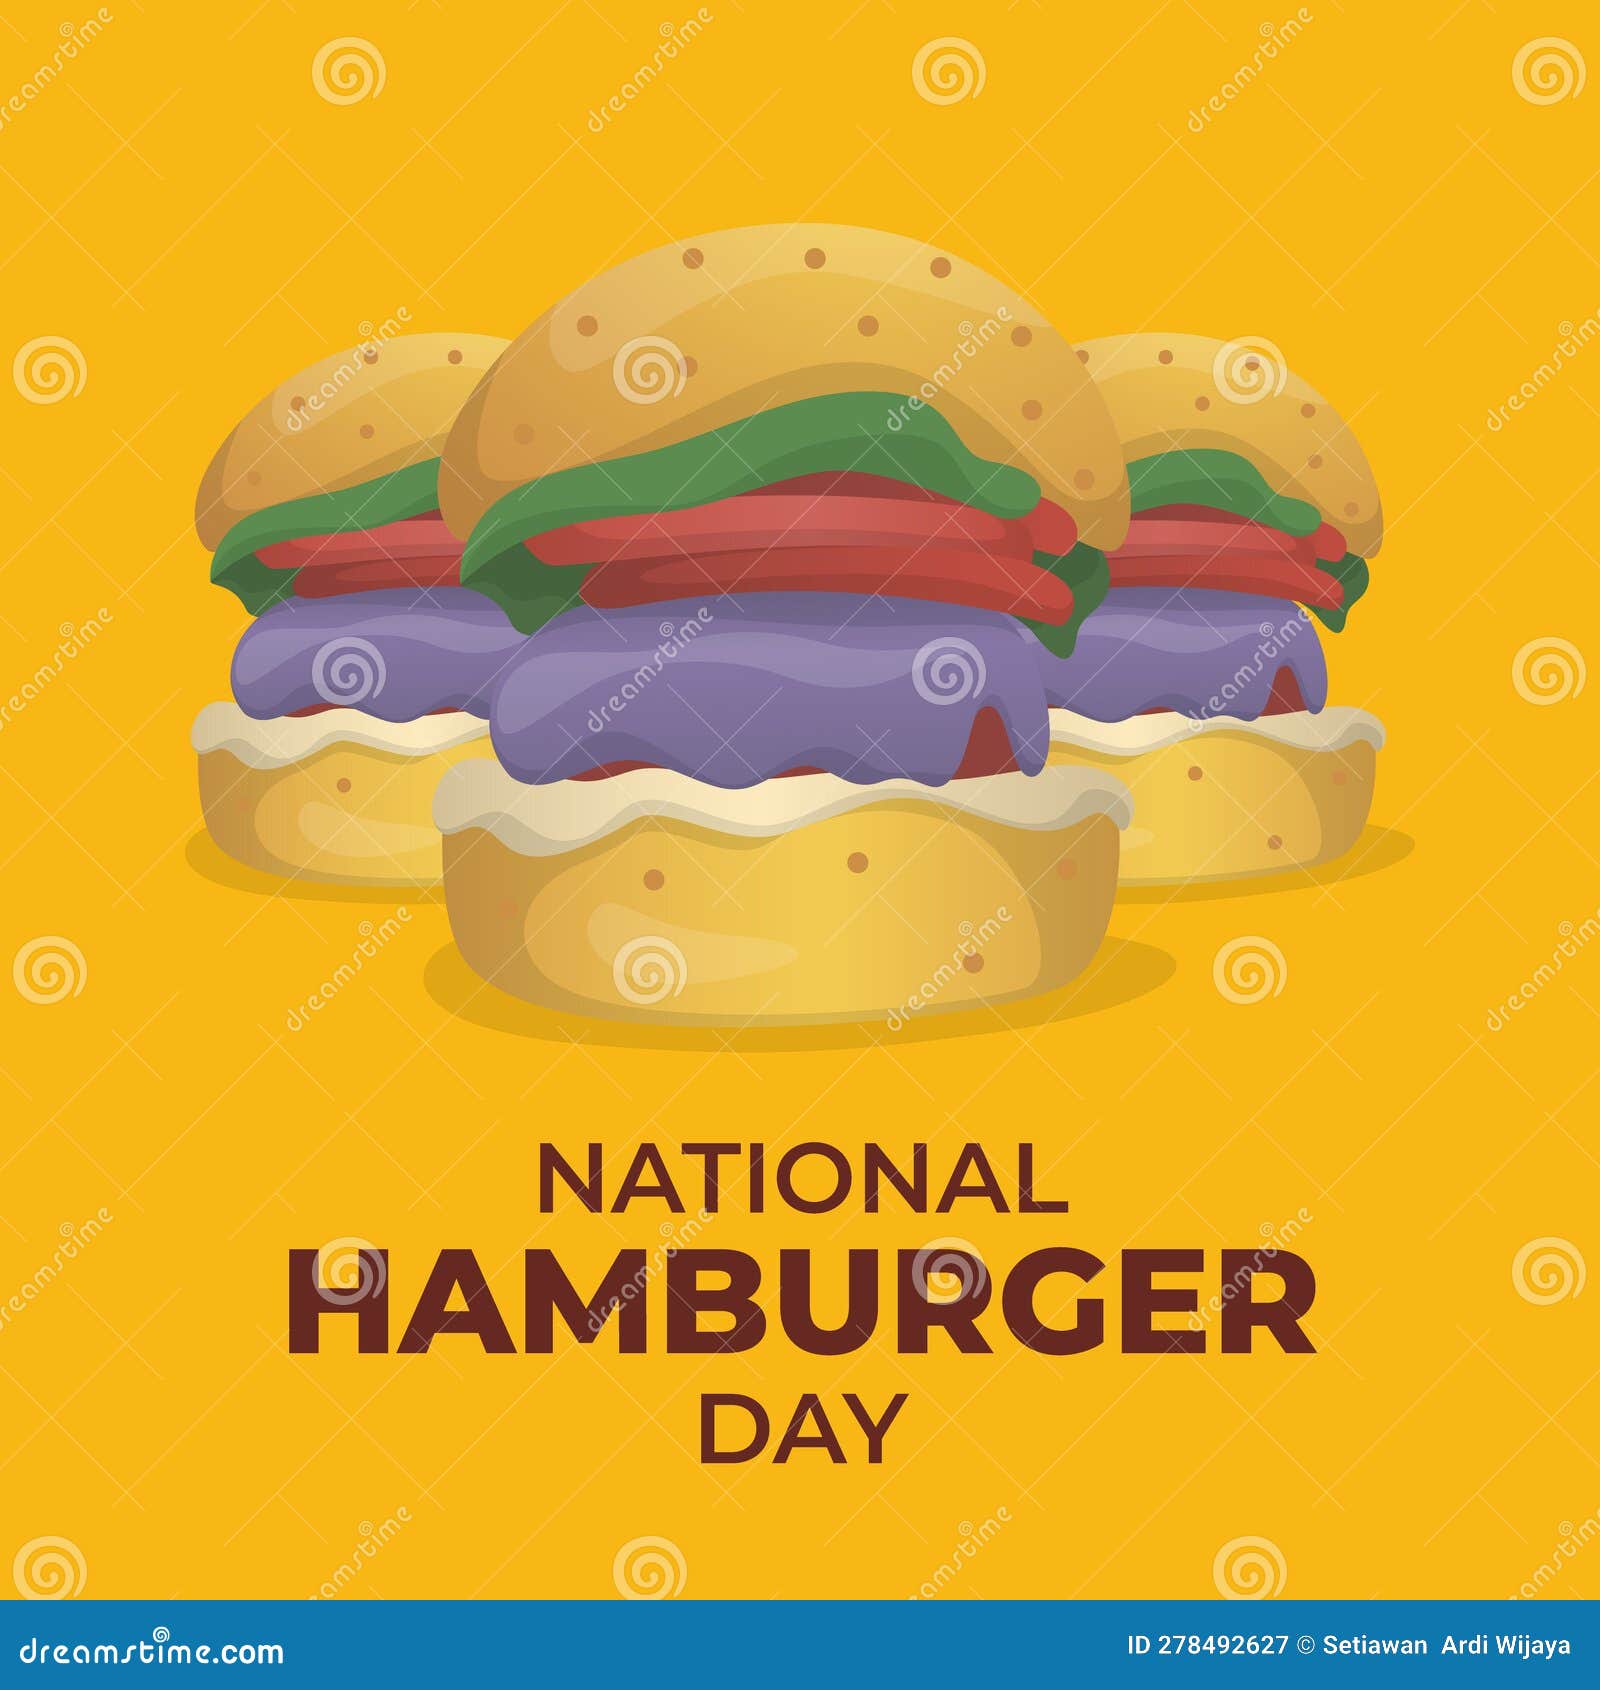 Vector Graphic of National Hamburger Day Good for National Hamburger